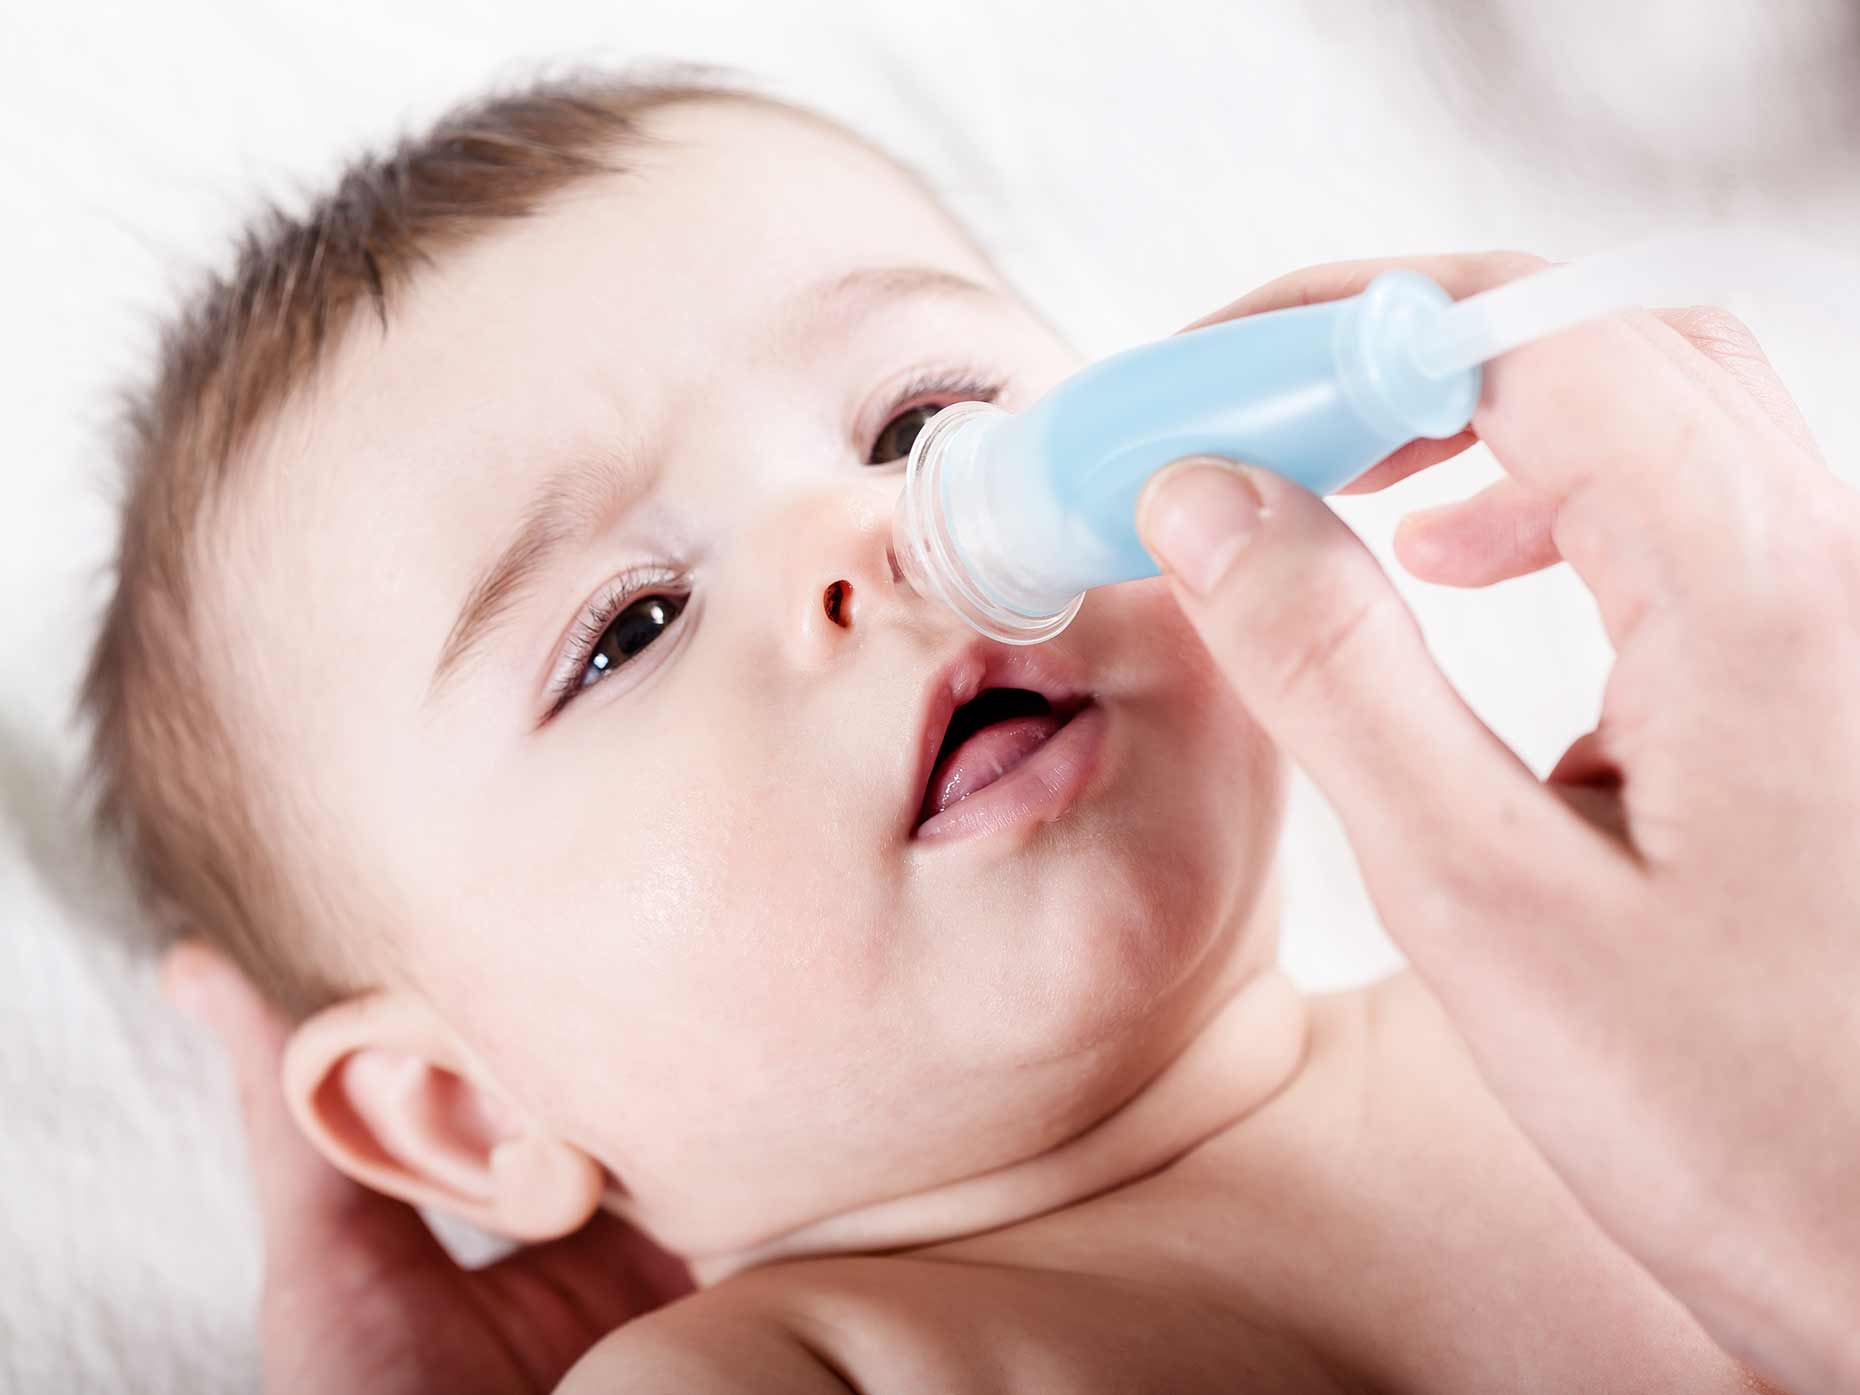 Промывать нос ребенку видео. Промывание носа детям до года. Промывание носа ребенку 1 год. Промыть нос ребенку 1 год. Для промывания носа новорожденным.